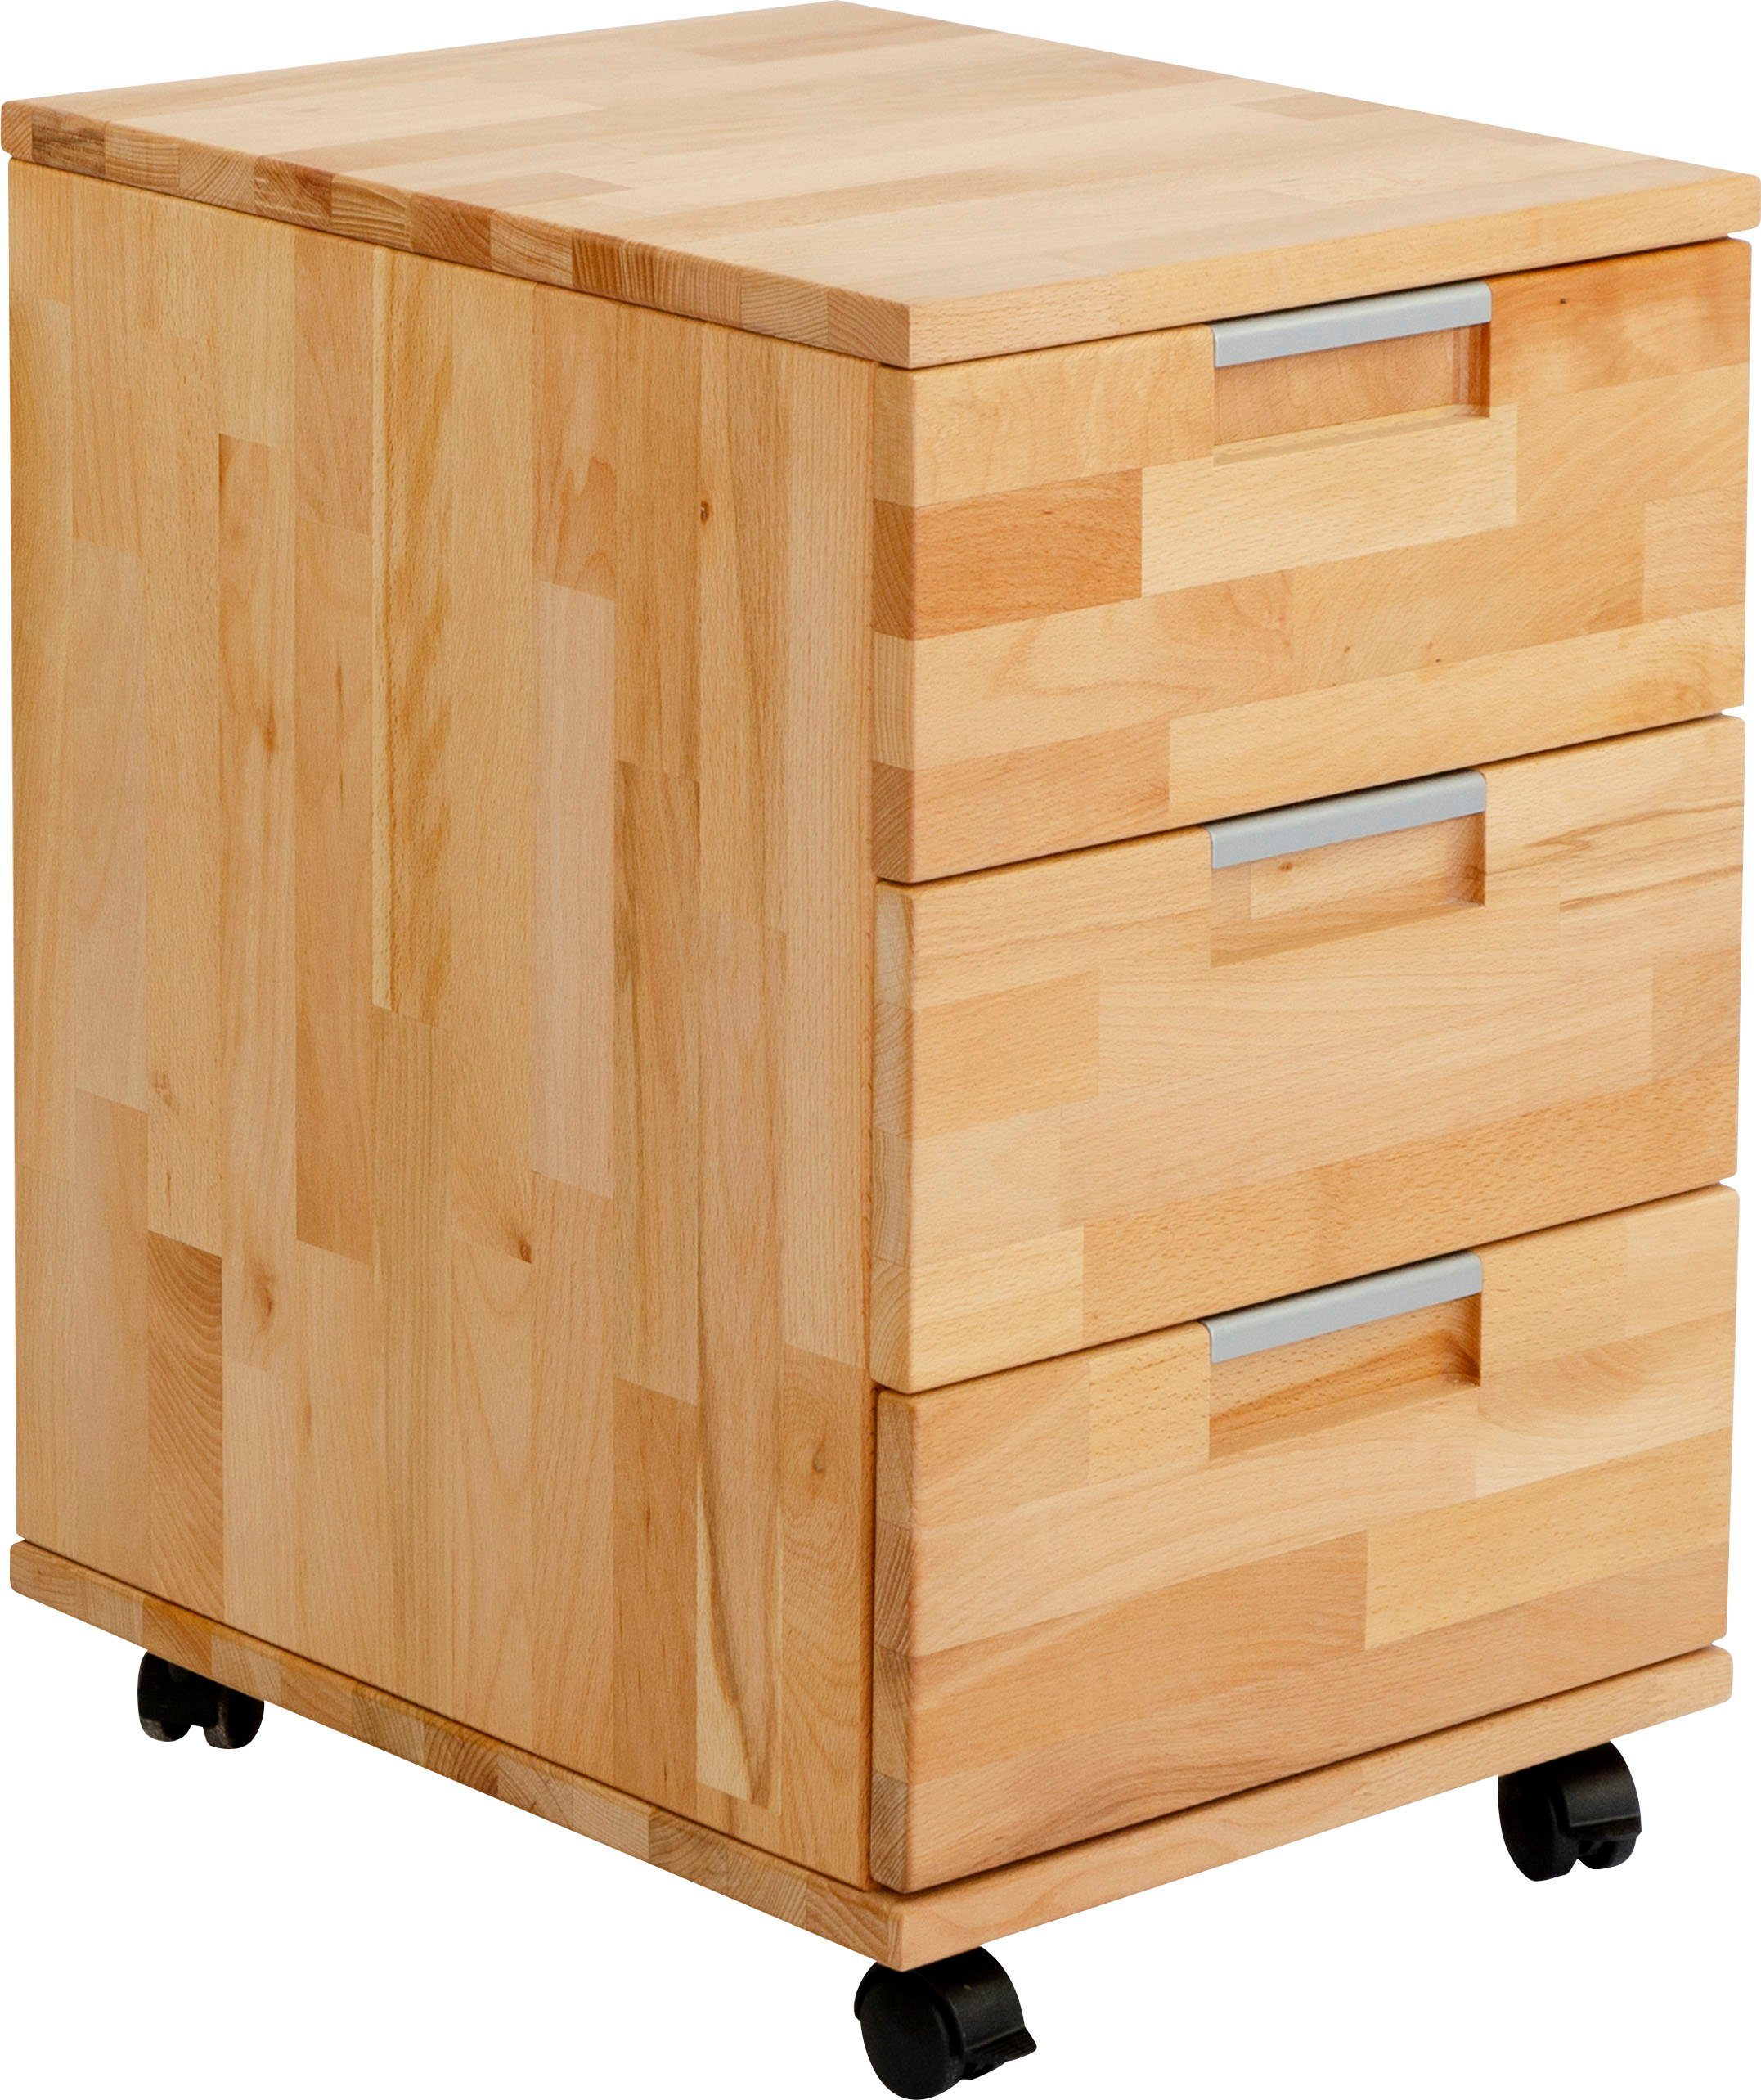 DEVAISE Mobiler Büro-Aktenschrank Büro-Rollcontainer Drucker Ständer Schrank mit 3 Schubladen und Regal für Schreibtisch,Holz,Hellbraun 